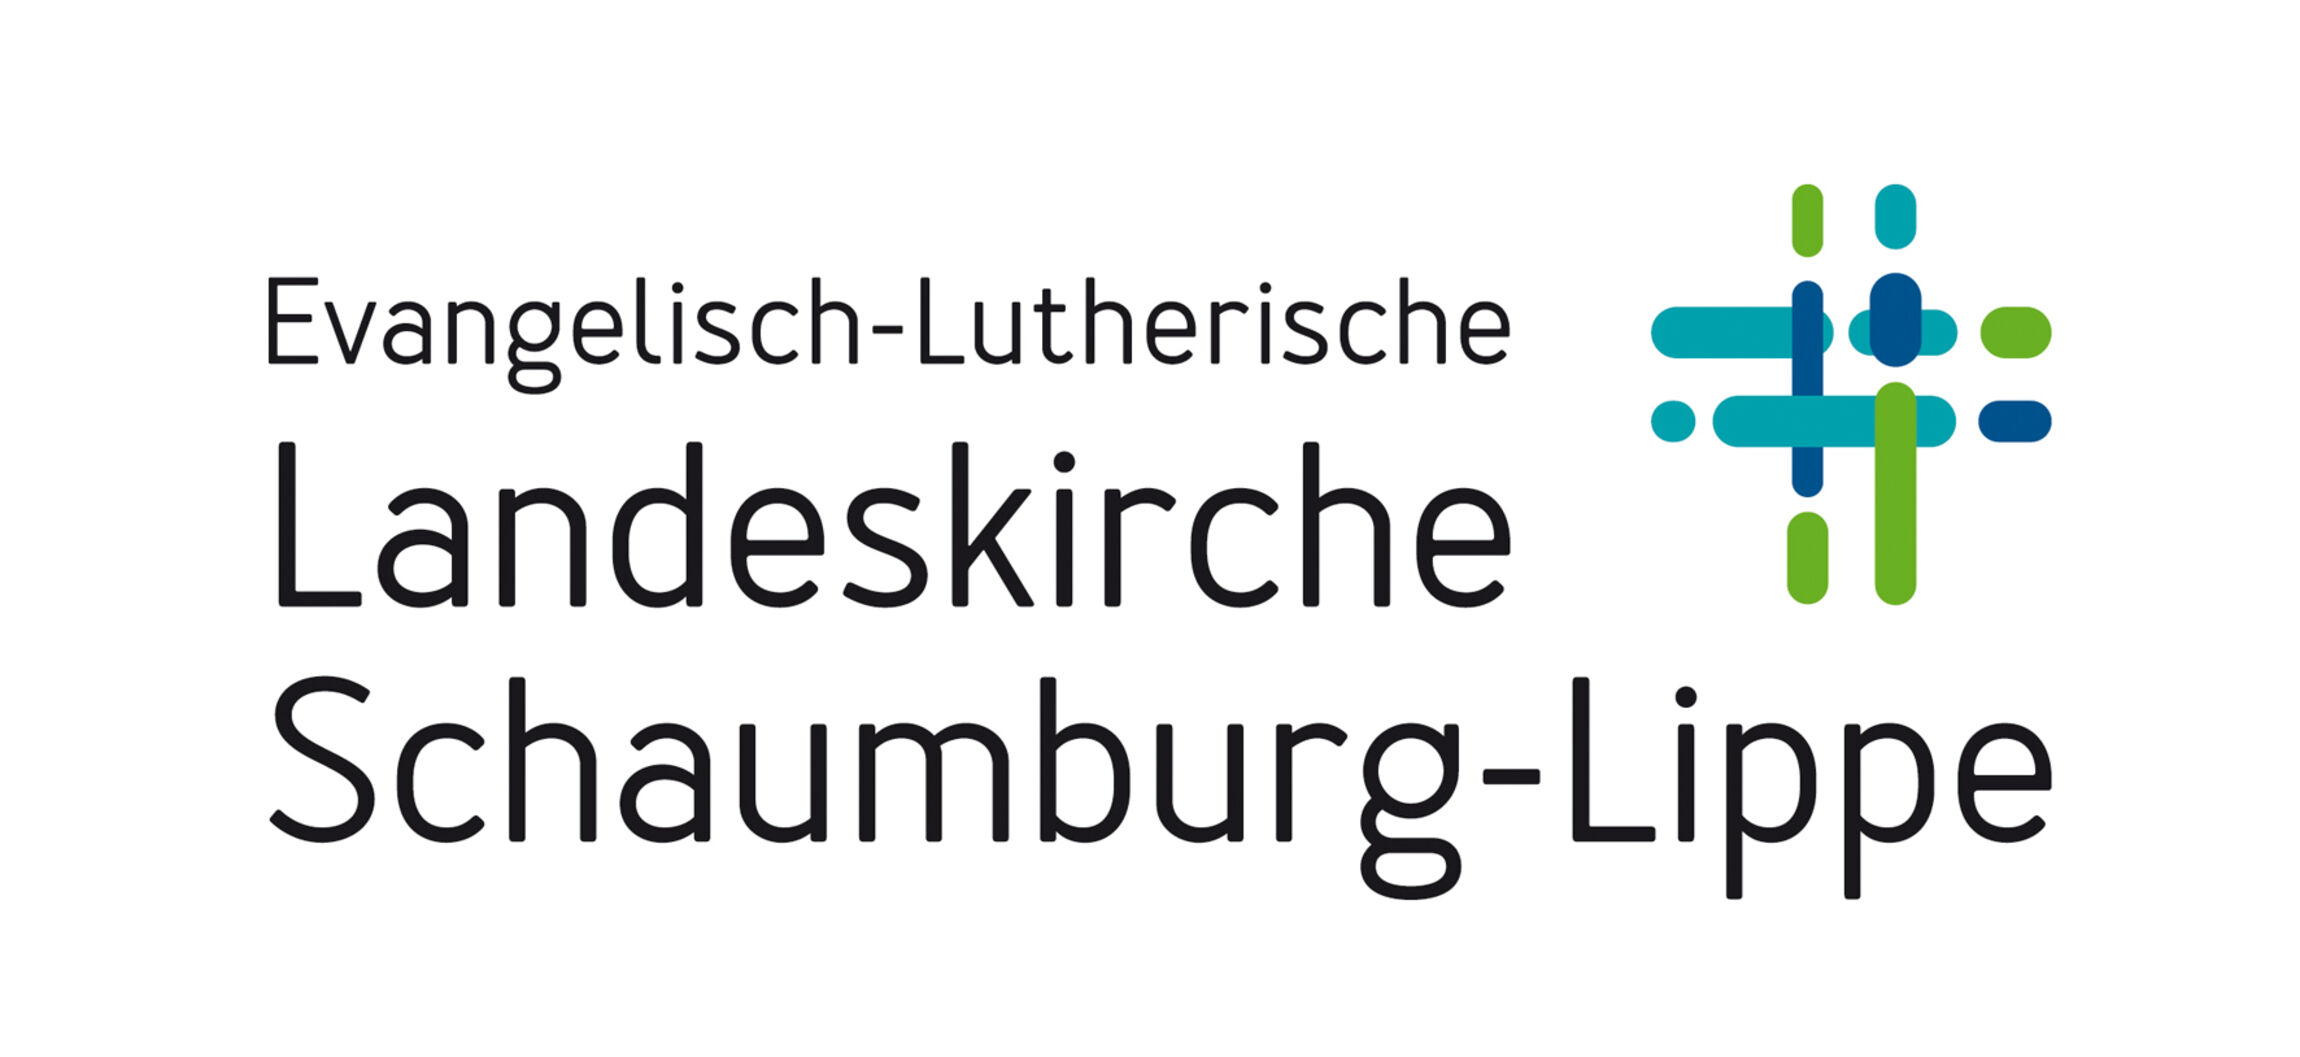 Schaumburg_Lippe_LKSL-Standard-rgb